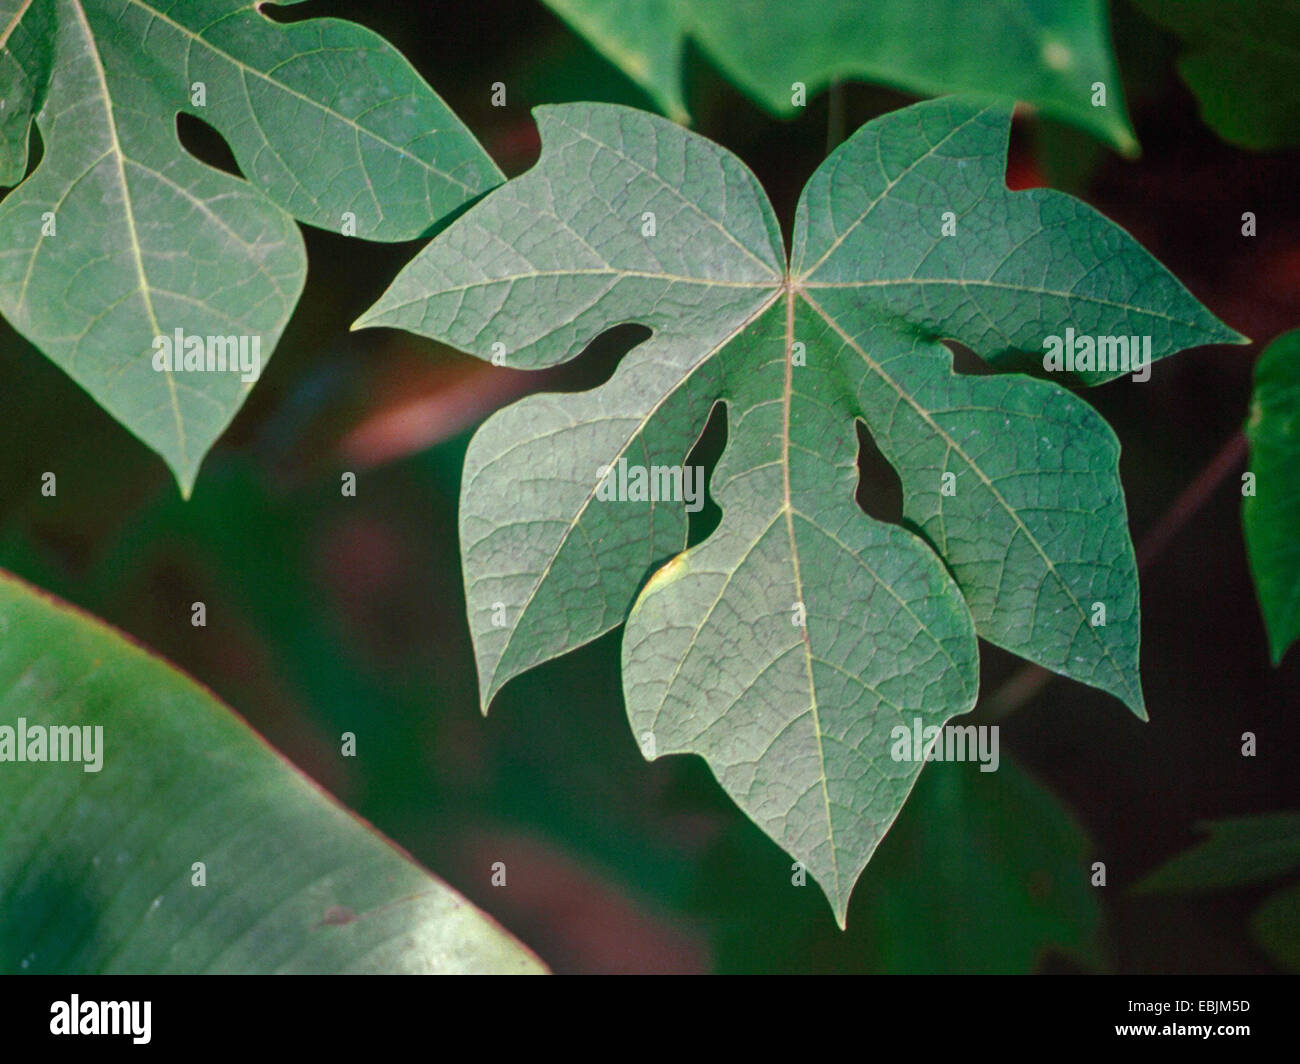 papaya, papaw, paw paw, mamao, tree melon (Carica papaya), leaf Stock Photo